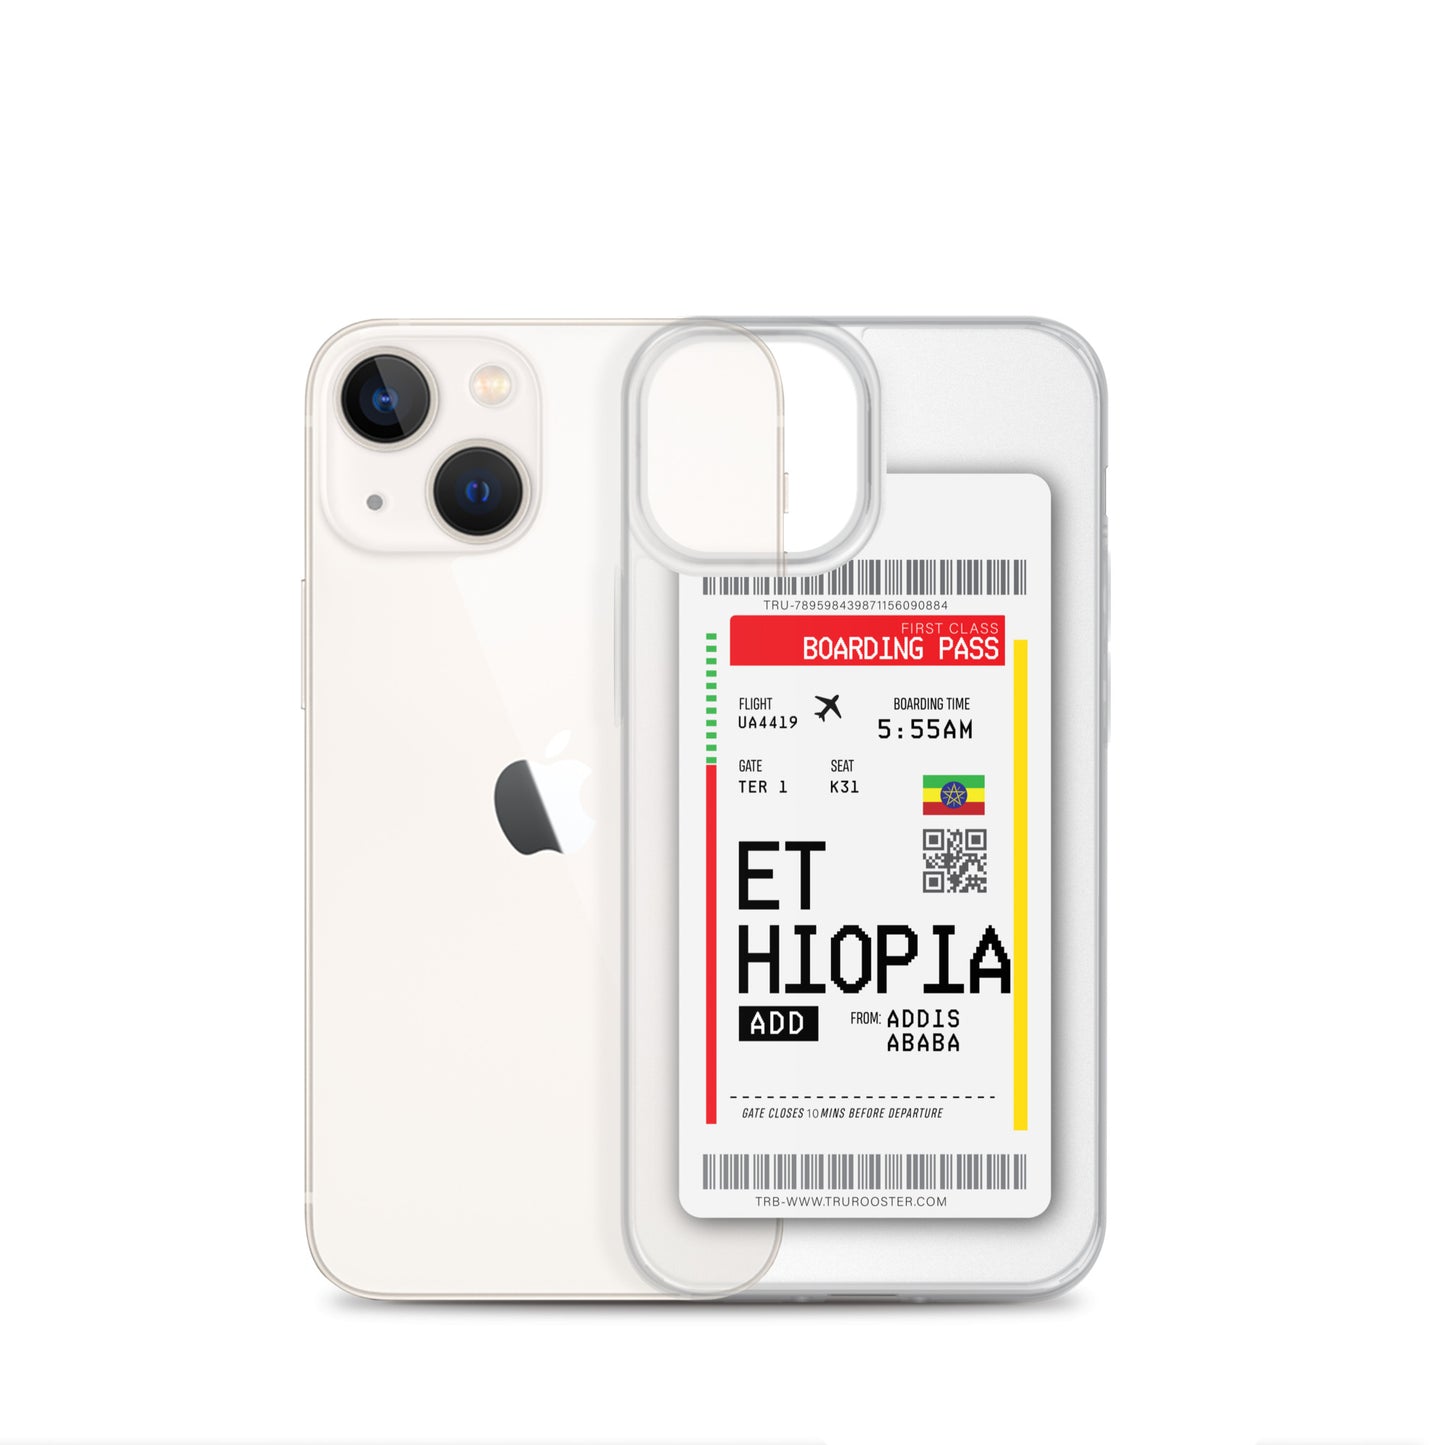 Ethiopia Transit Boarding pass iPhone Case